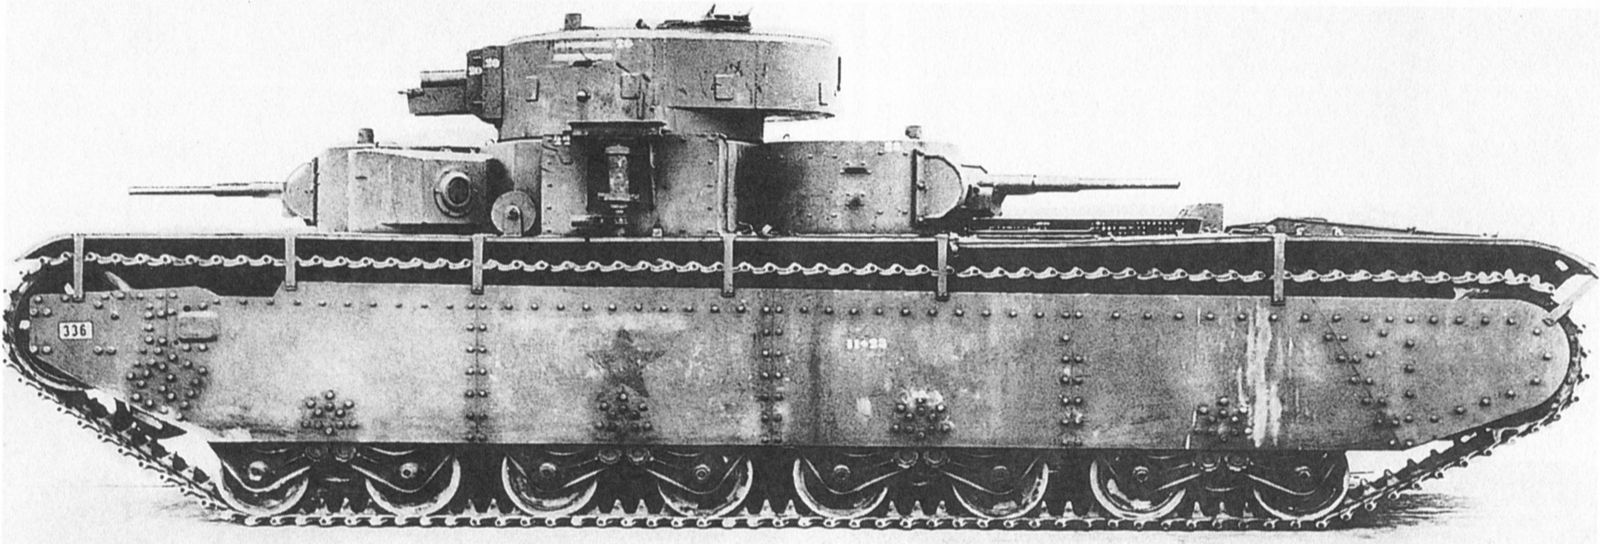 T-35 soviet heavy tank model 1938, the port side, Fall 1941 (1)